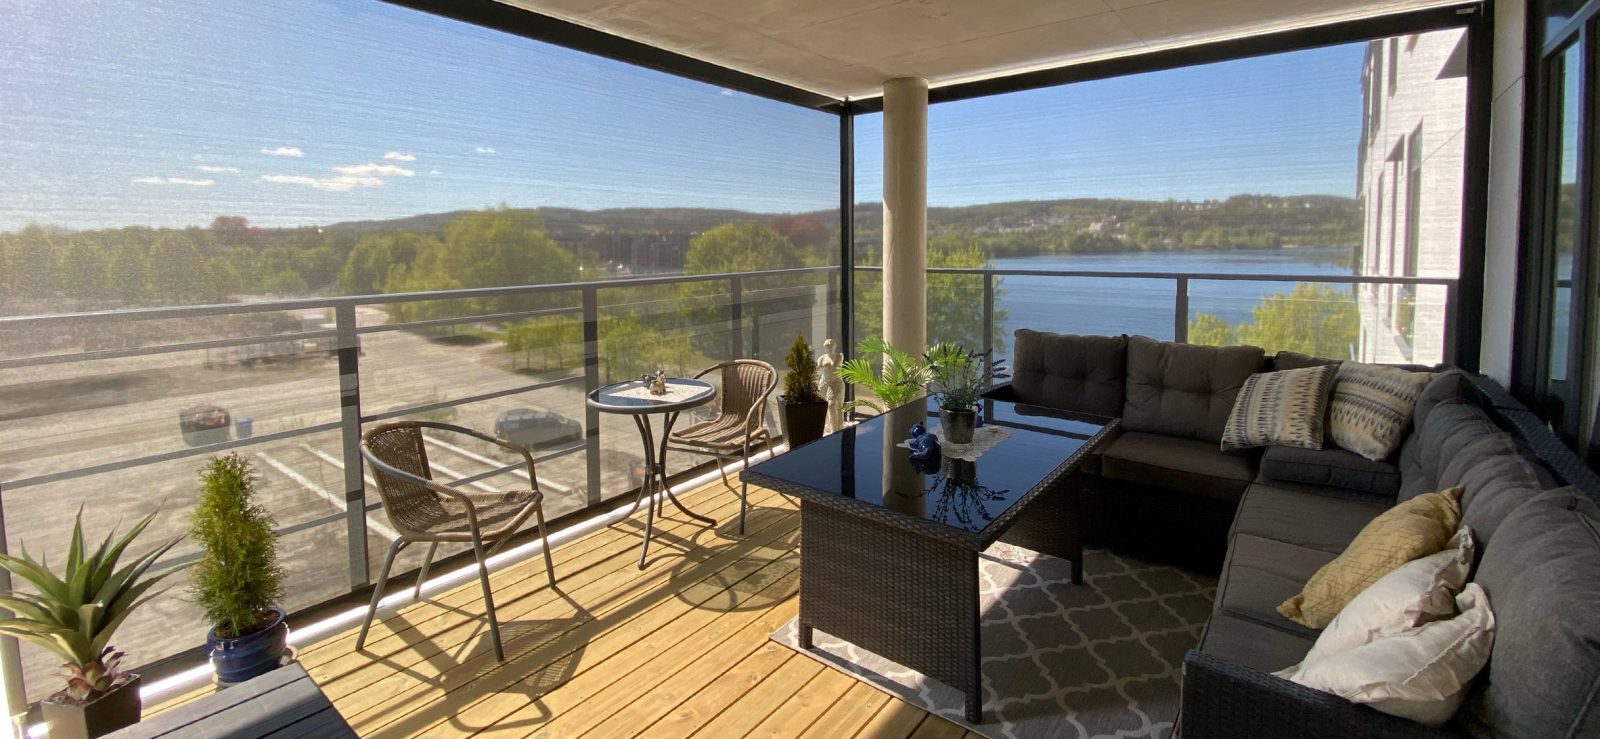 Flott utsikt igjennom levegg av screen på en moderne og koselig veranda.